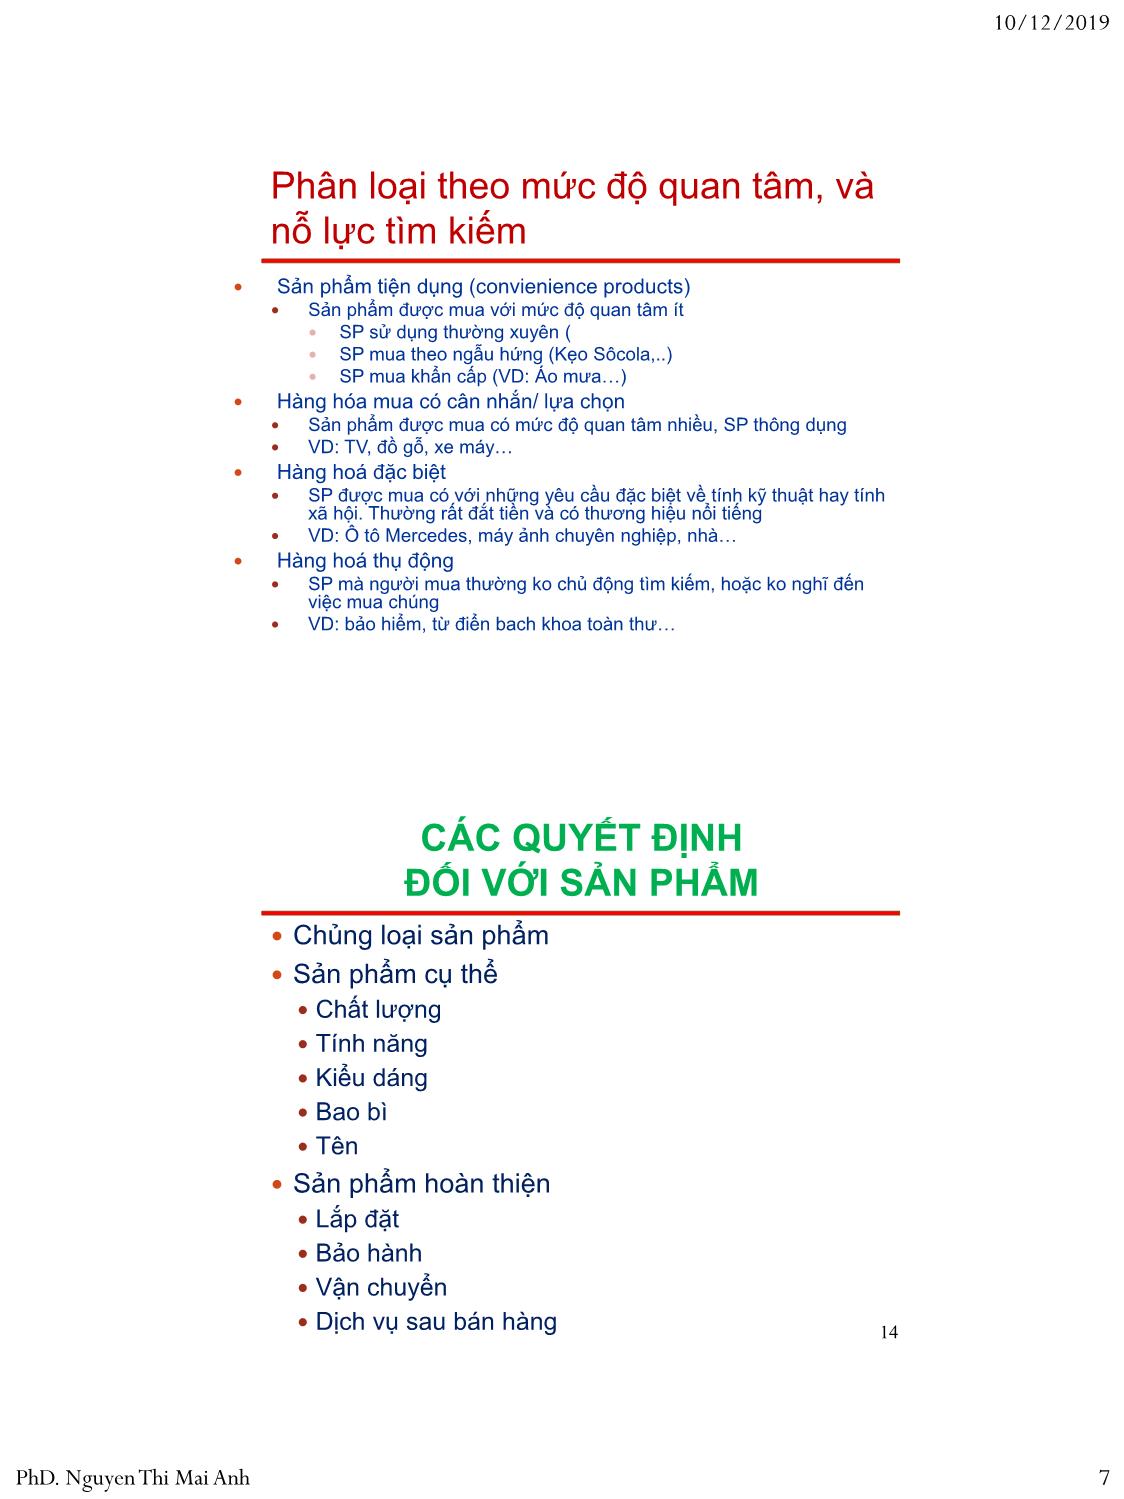 Bài giảng Nguyên lý marketing - Bài 6: Chiến lược đối với sản phẩm - Nguyễn Thị Mai An trang 7